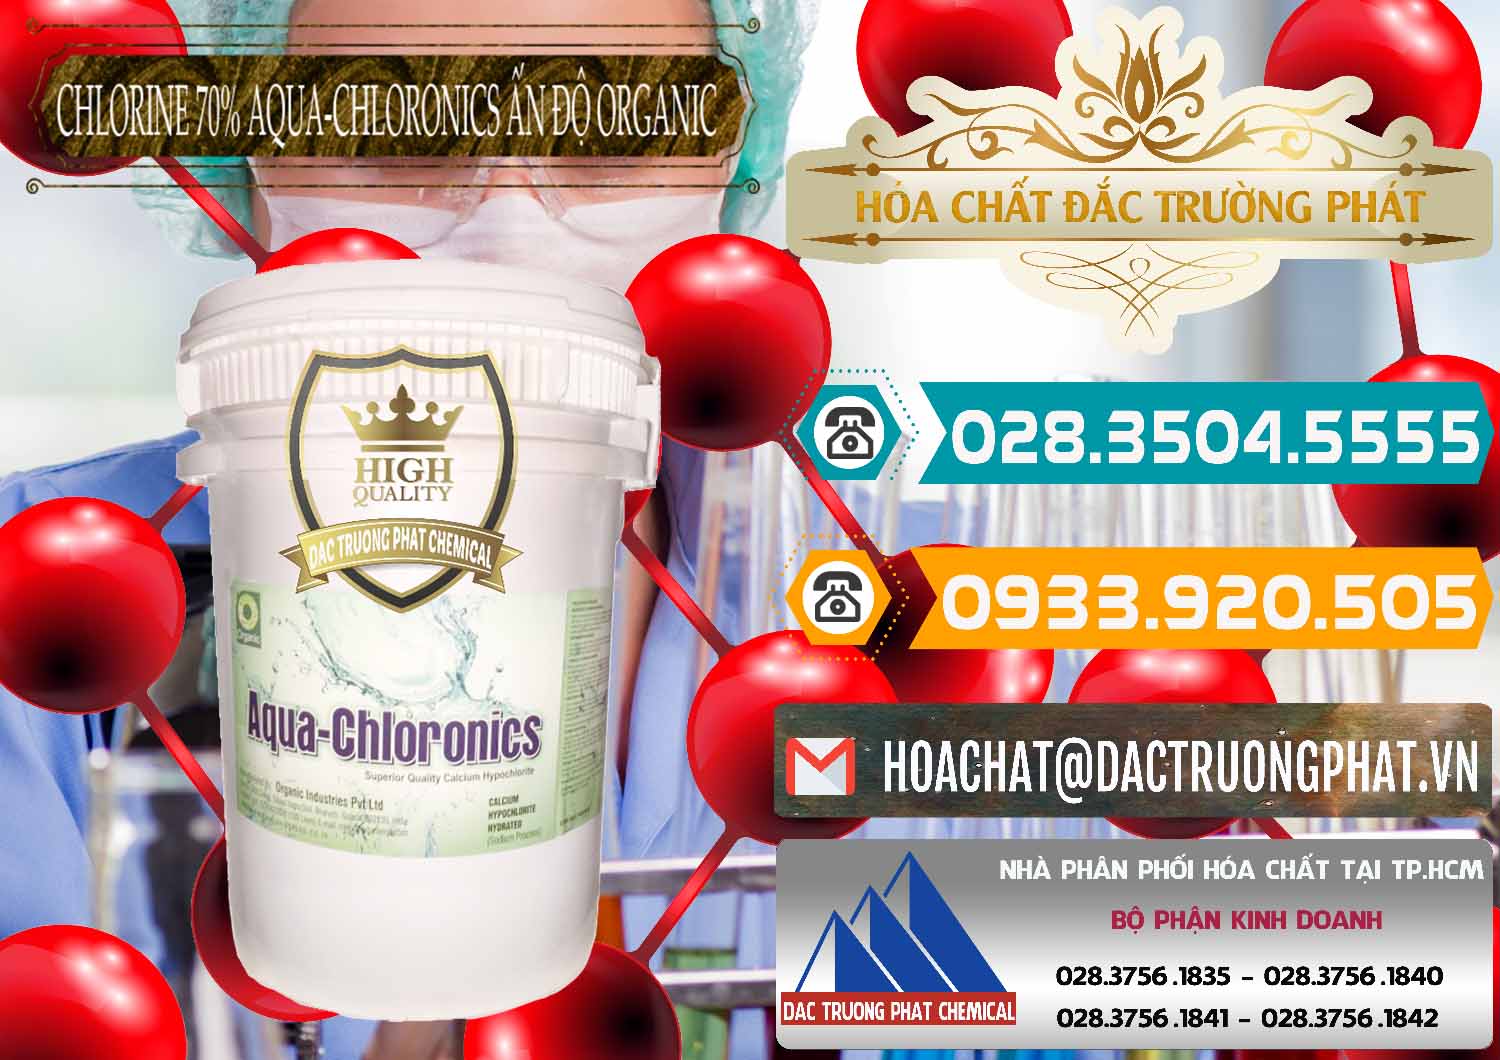 Nơi phân phối & bán Chlorine – Clorin 70% Aqua-Chloronics Ấn Độ Organic India - 0211 - Nơi chuyên kinh doanh ( phân phối ) hóa chất tại TP.HCM - congtyhoachat.vn